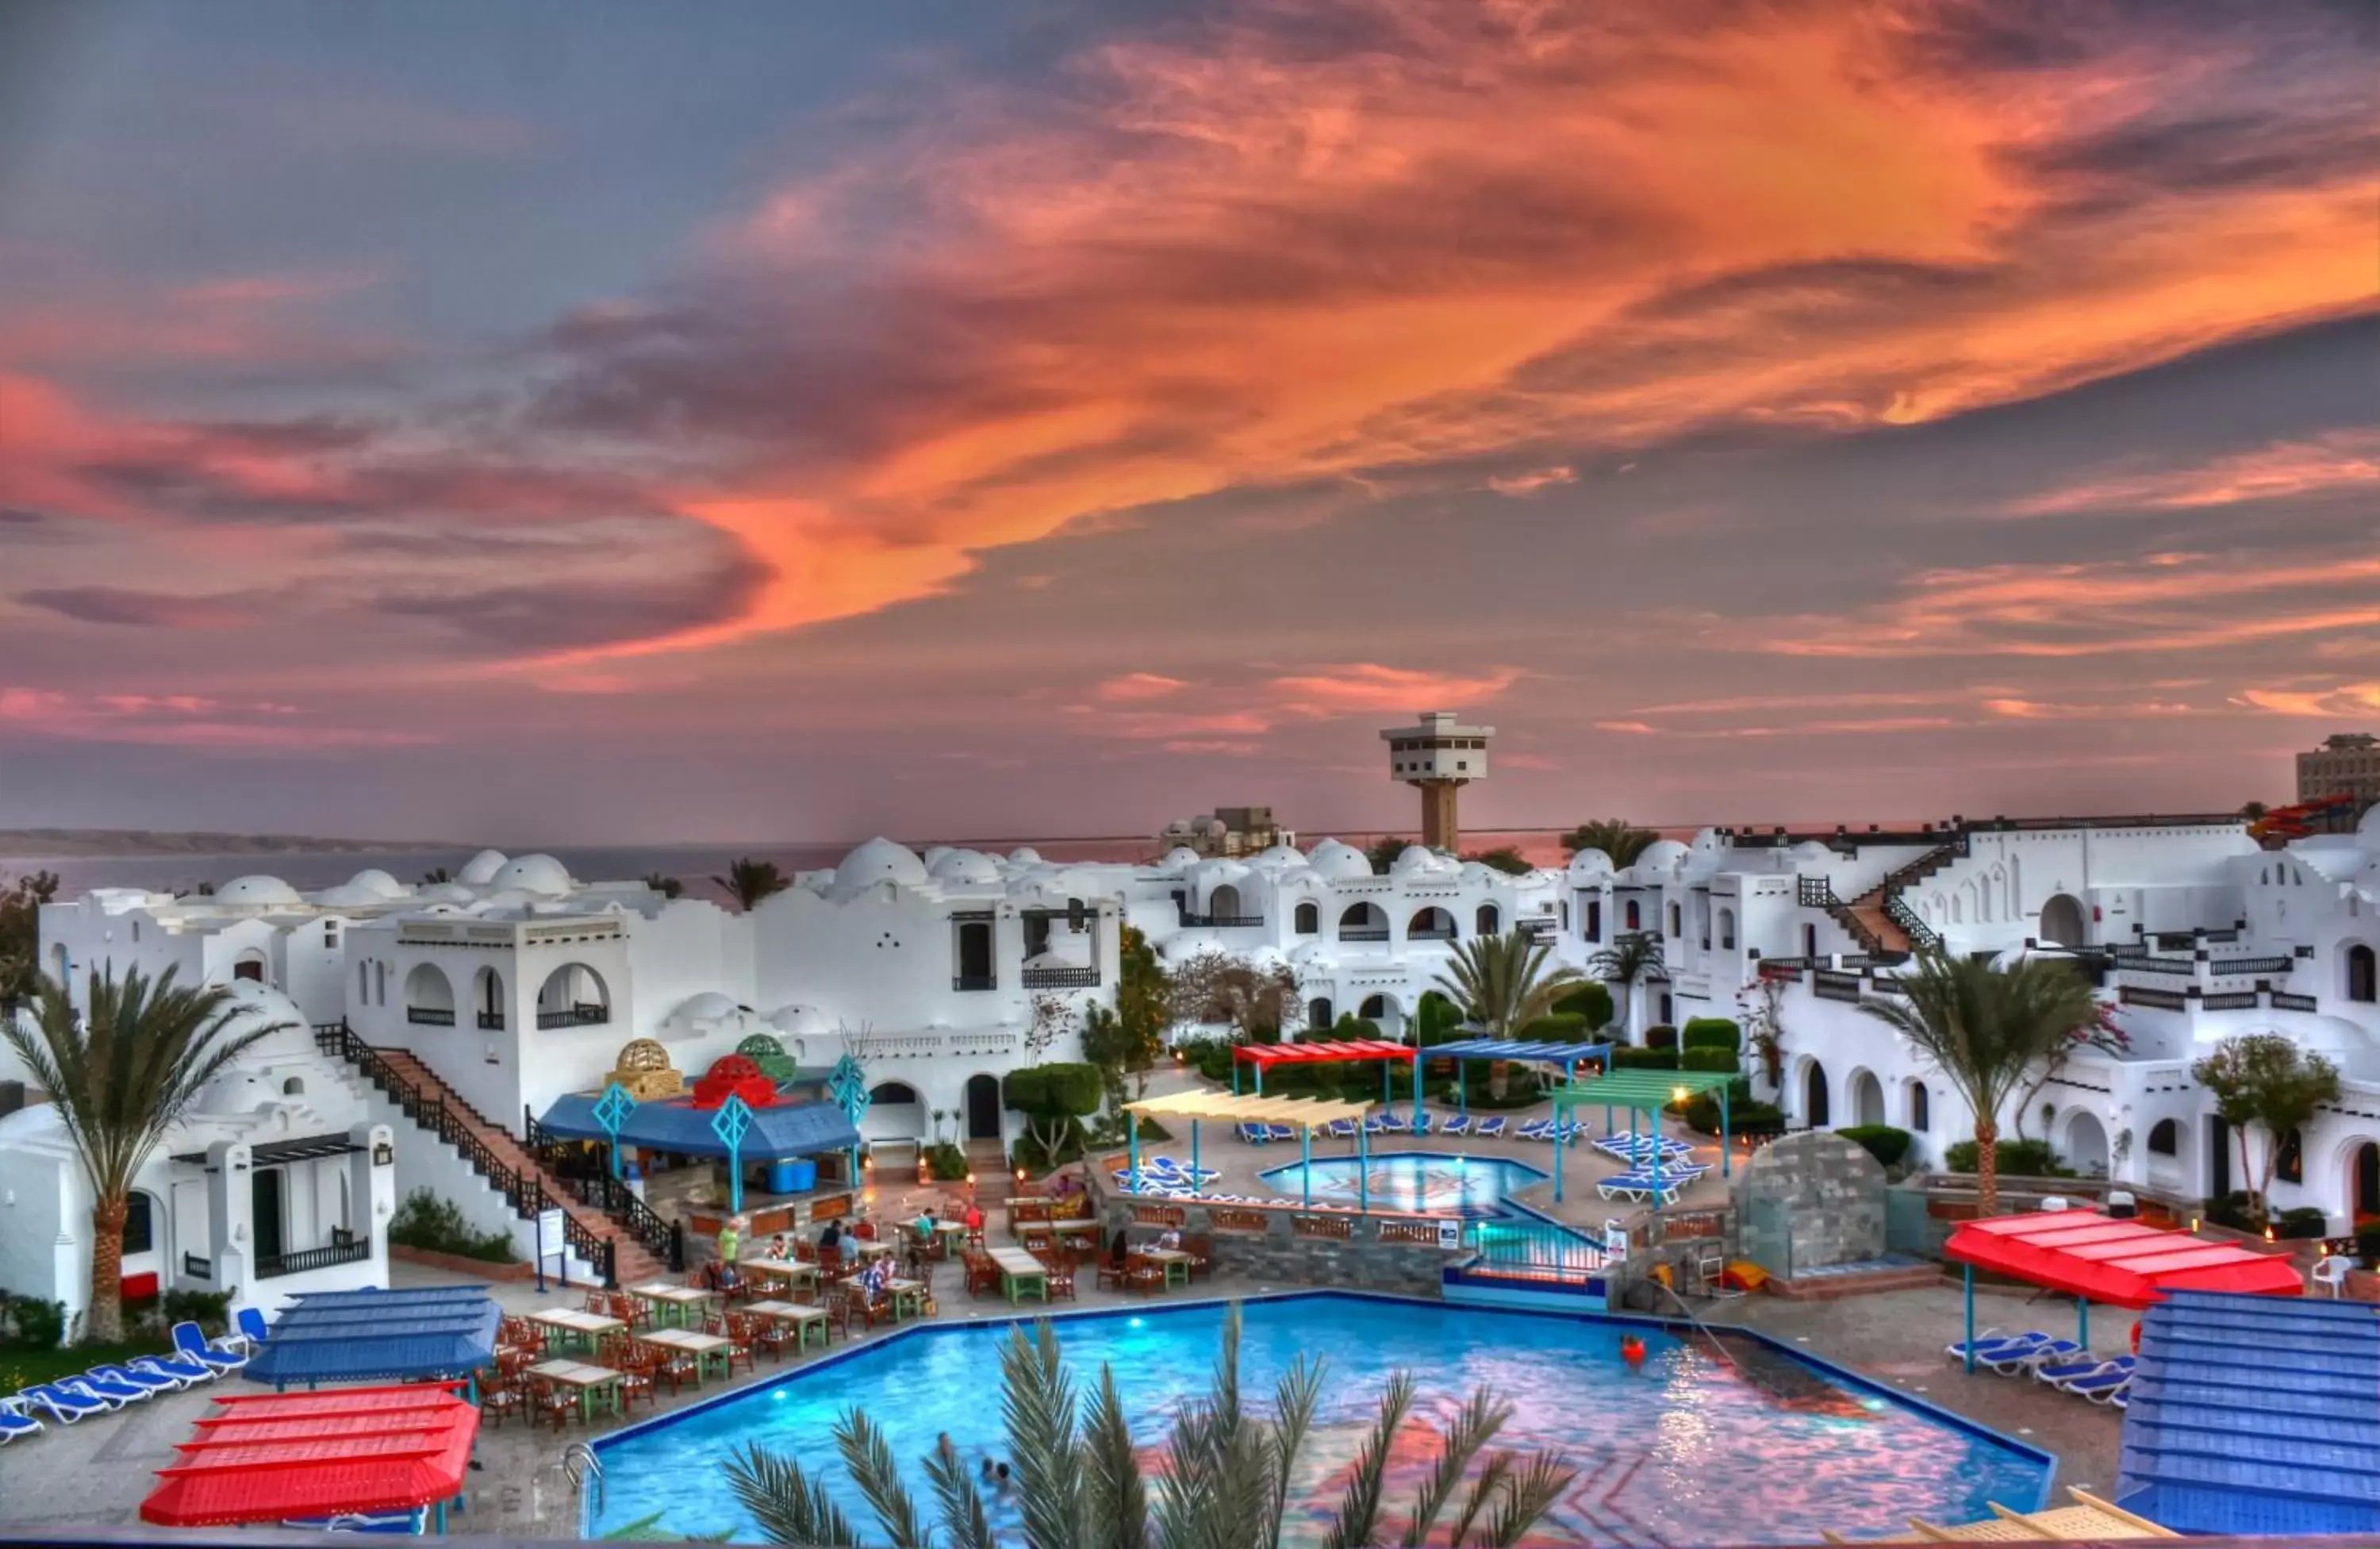 Pool view in Arabella Azur Resort